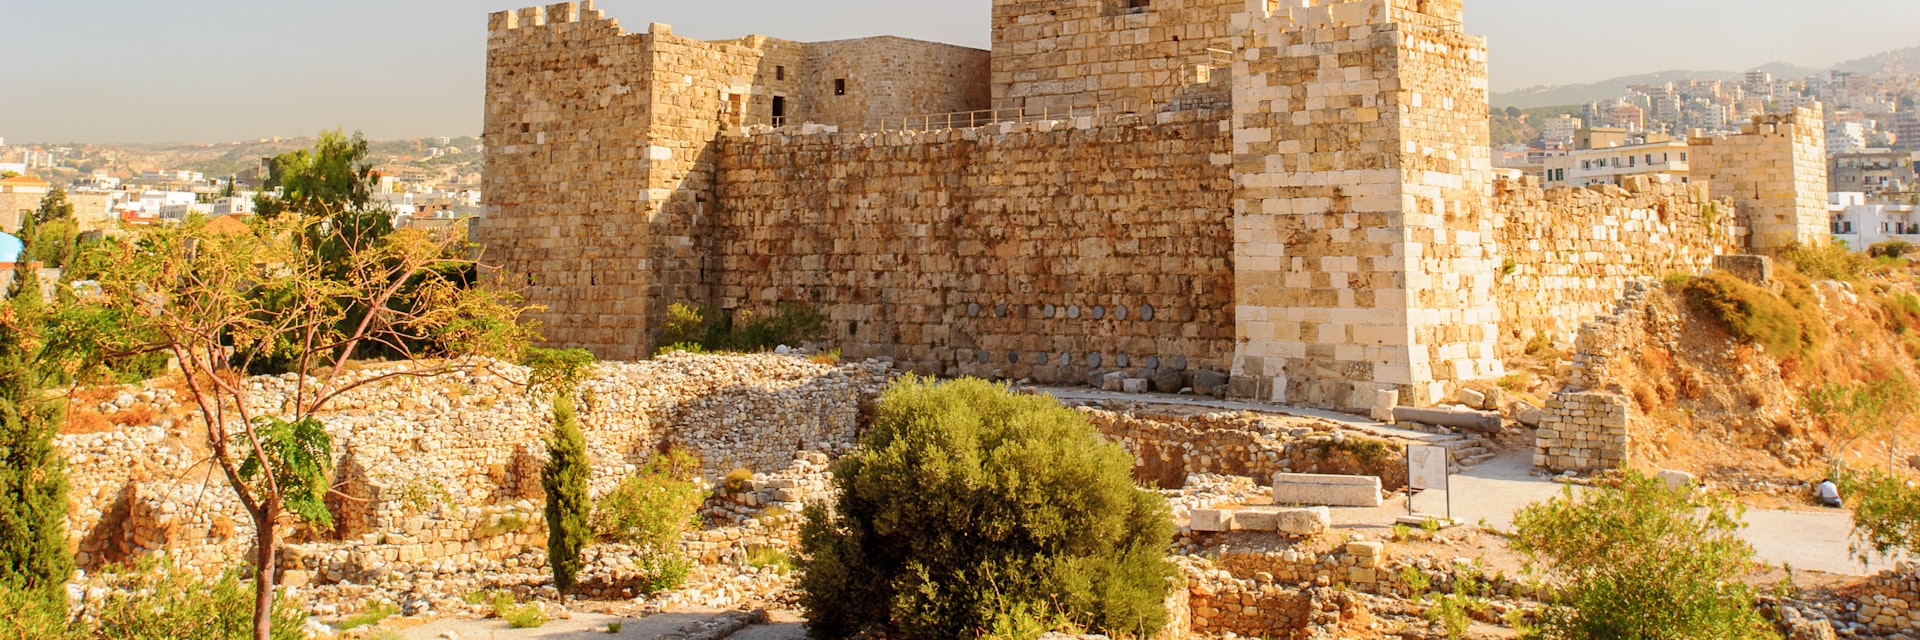 Byblos Crusader Castle, Lebanon.  